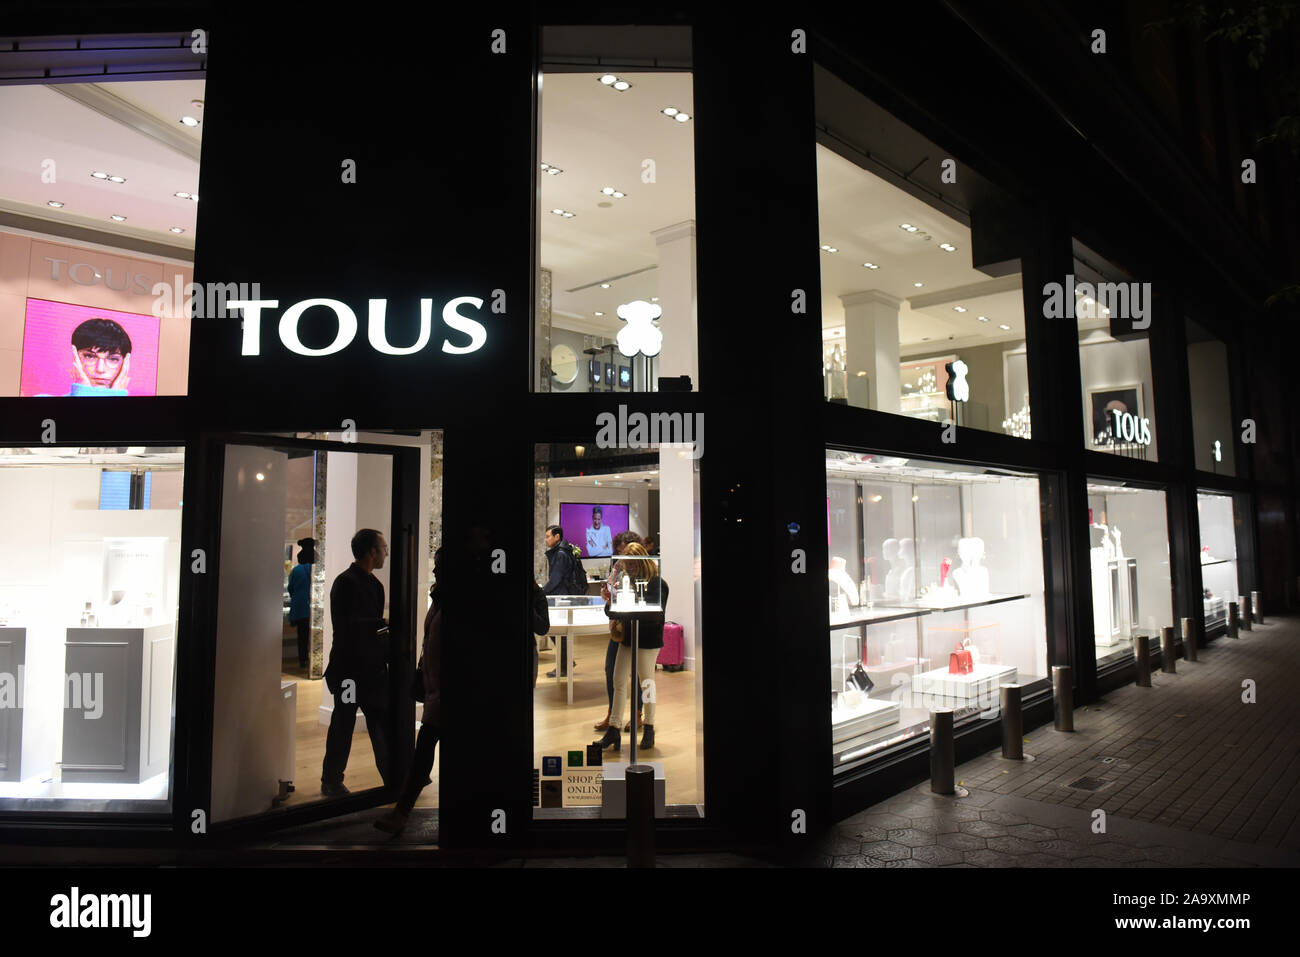 TOUS opens a flagship store in Artz Pedregal - TOUS News